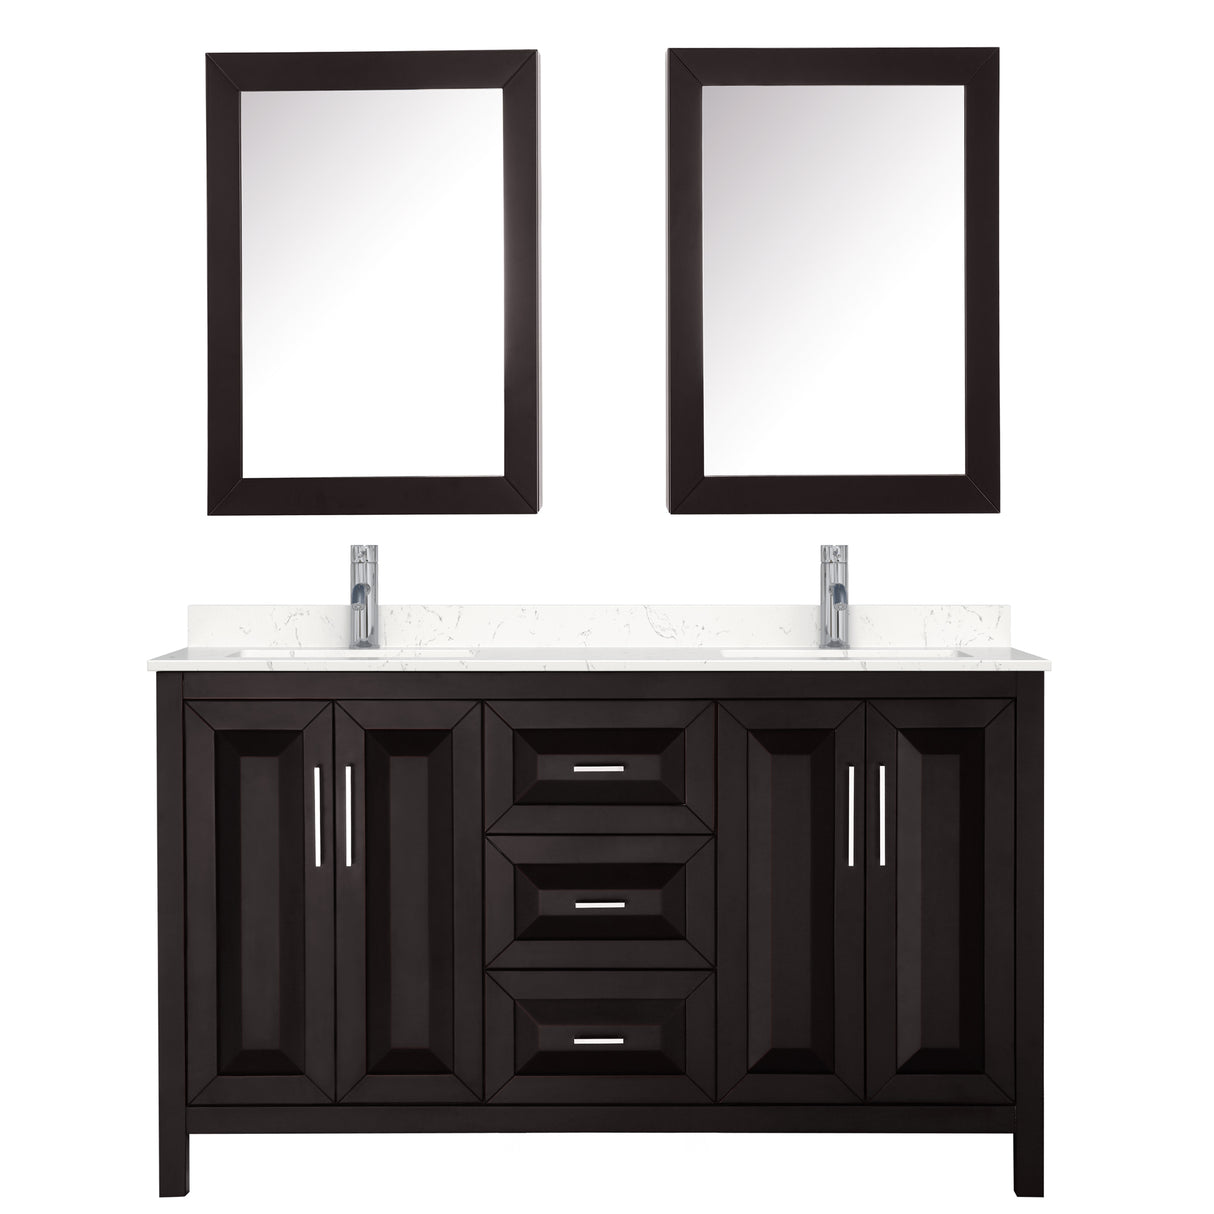 Daria 60 Inch Double Bathroom Vanity in Dark Espresso Carrara Cultured Marble Countertop Undermount Square Sinks Medicine Cabinets